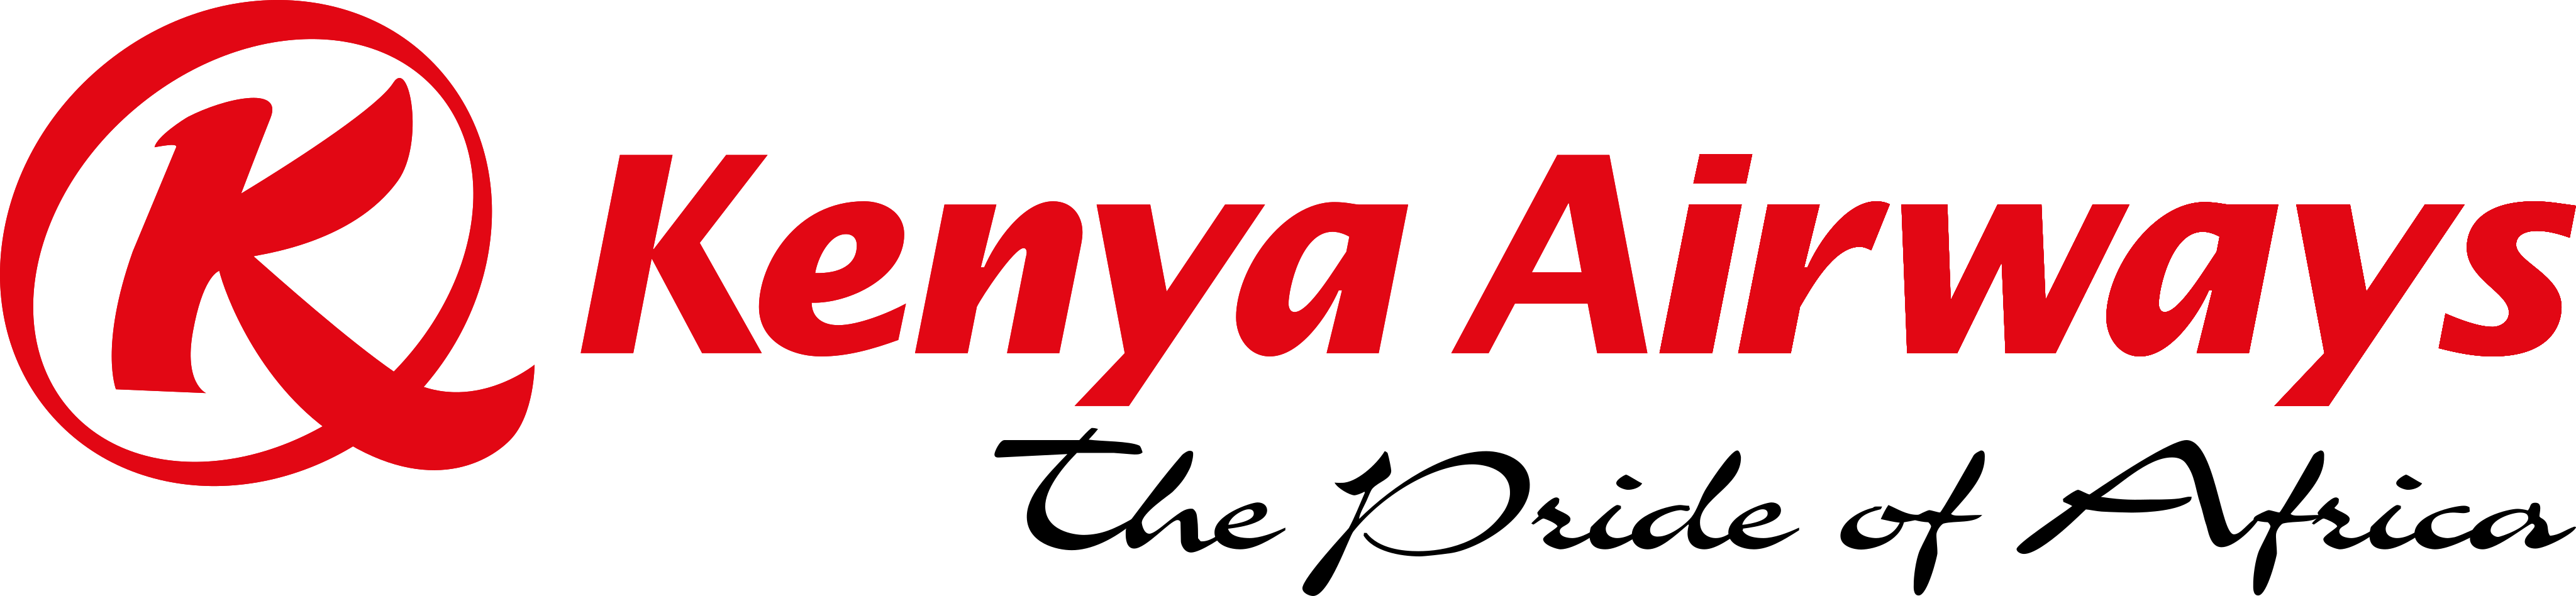 Kenya Airways Logo.